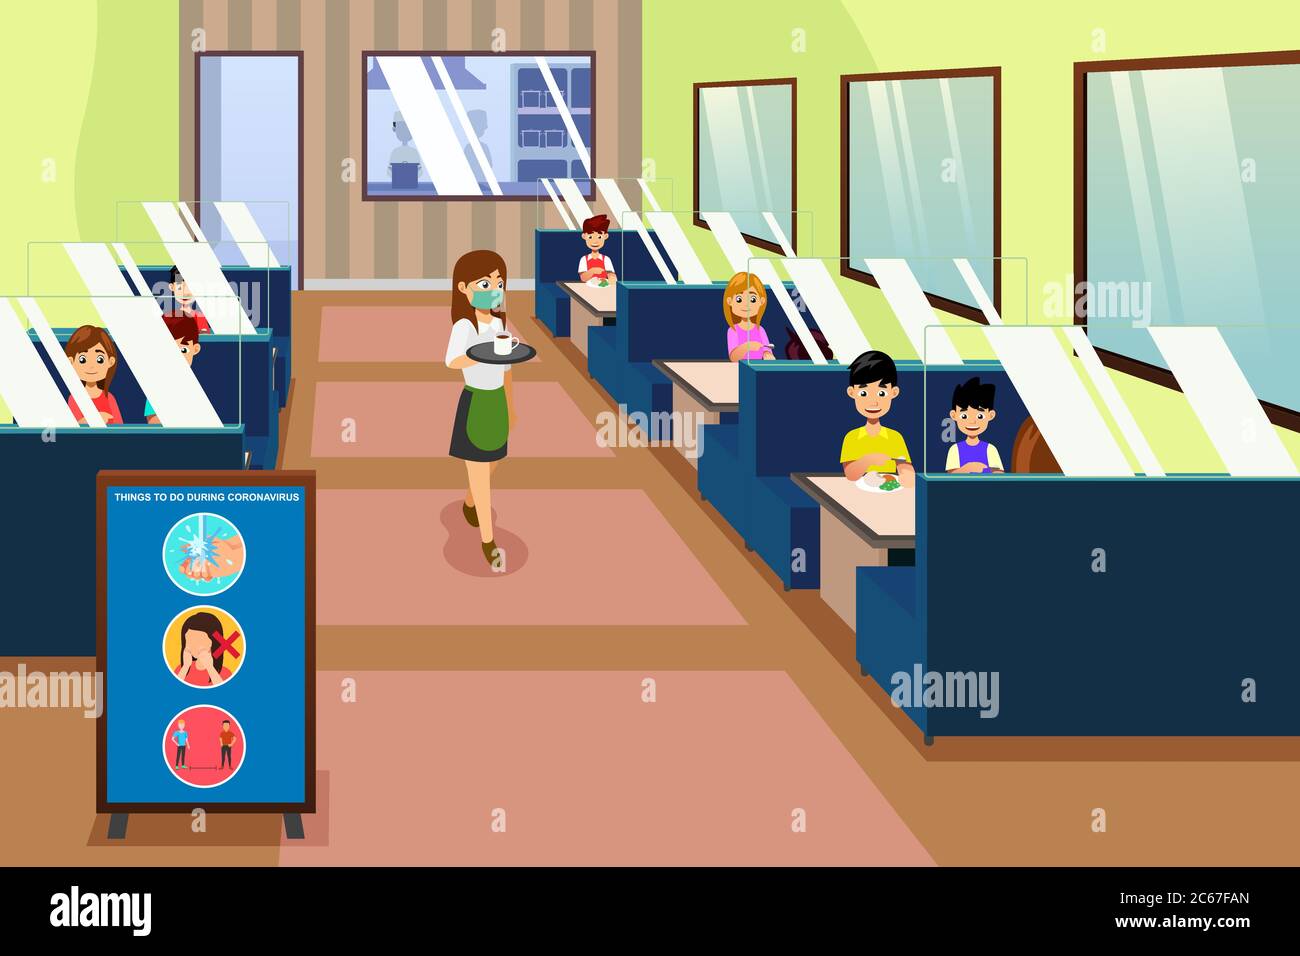 Illustration vectorielle de la façon dont les gens se défont dans un restaurant pendant une pandémie Illustration de Vecteur